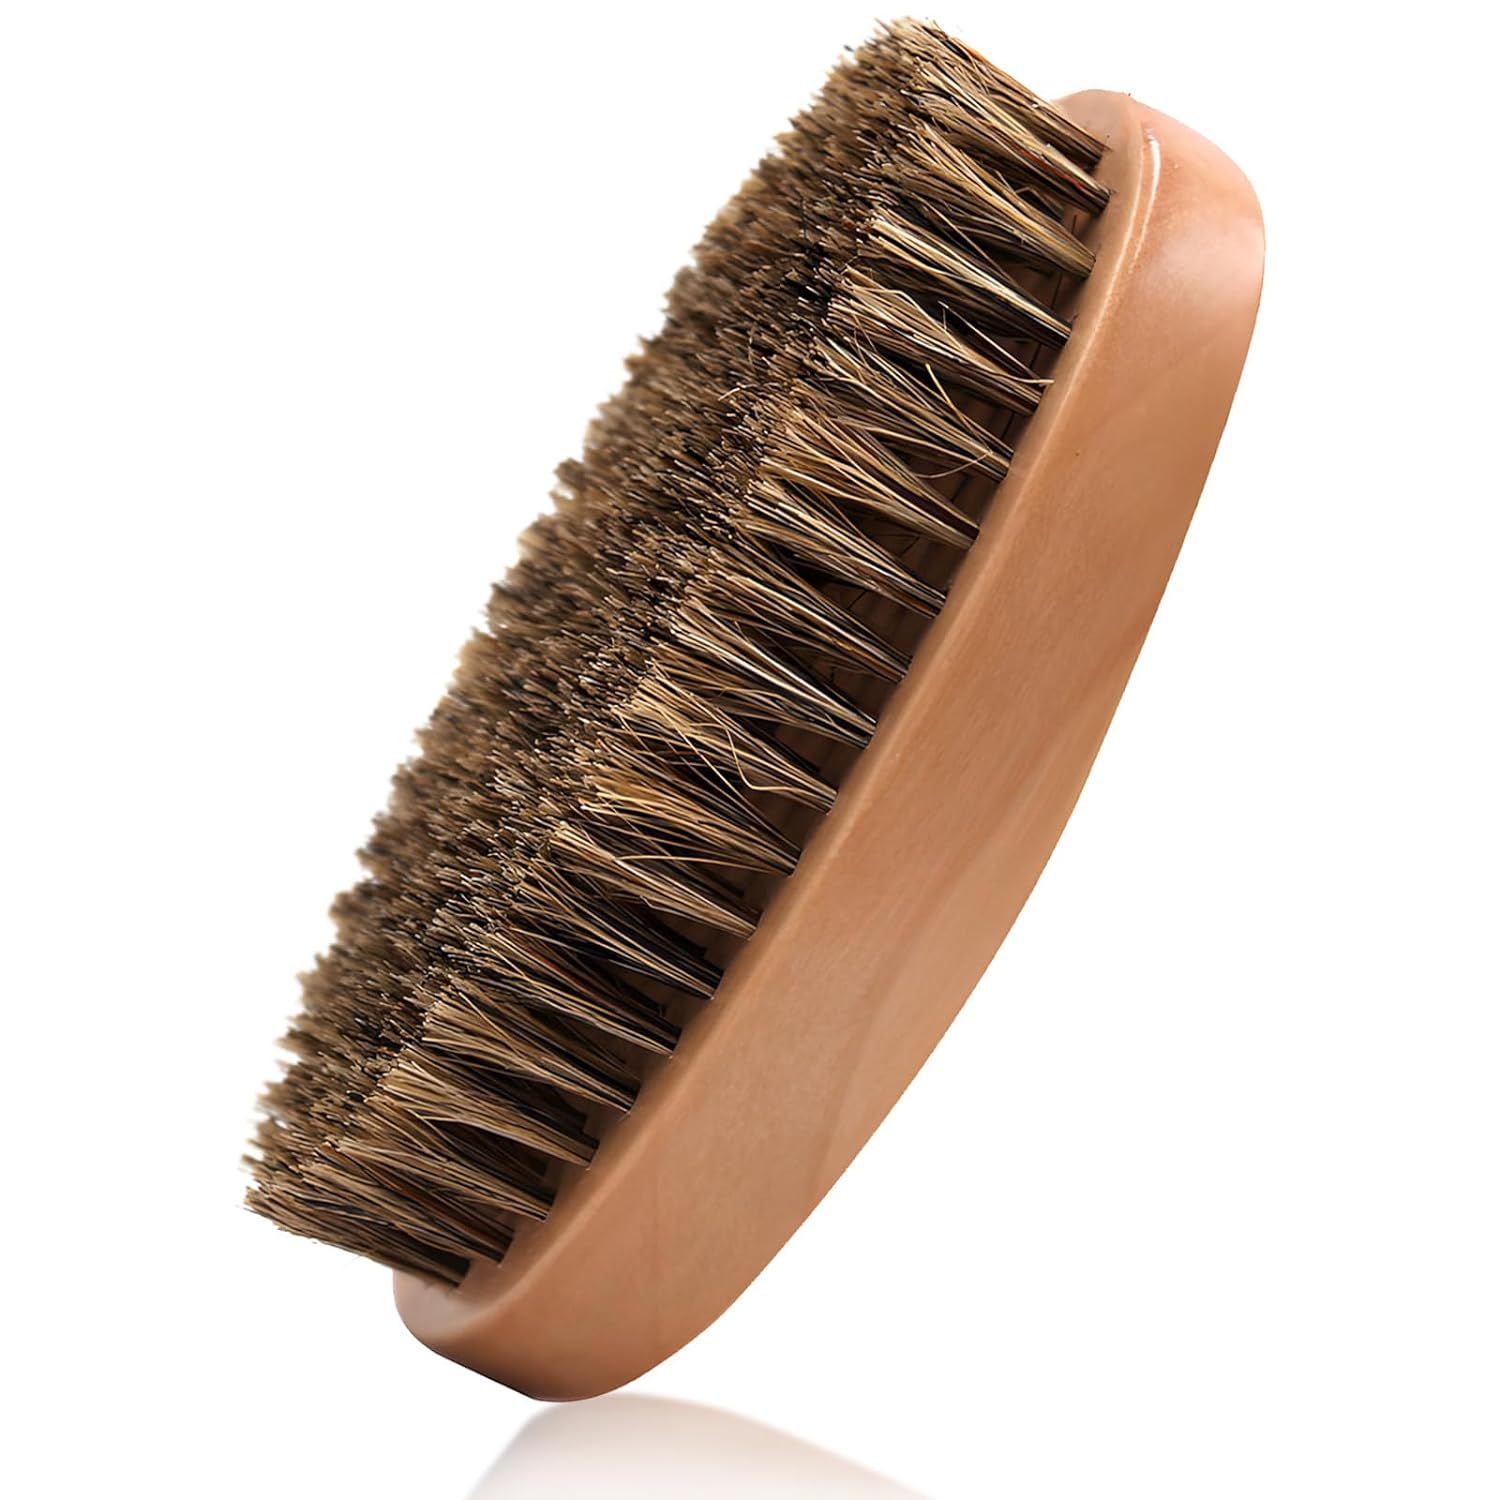 Kootinn Boar Bristle Hair Beard Brush for Men - Small Soft Beard Brush, Pocket Travel Men's Woode... | Amazon (US)